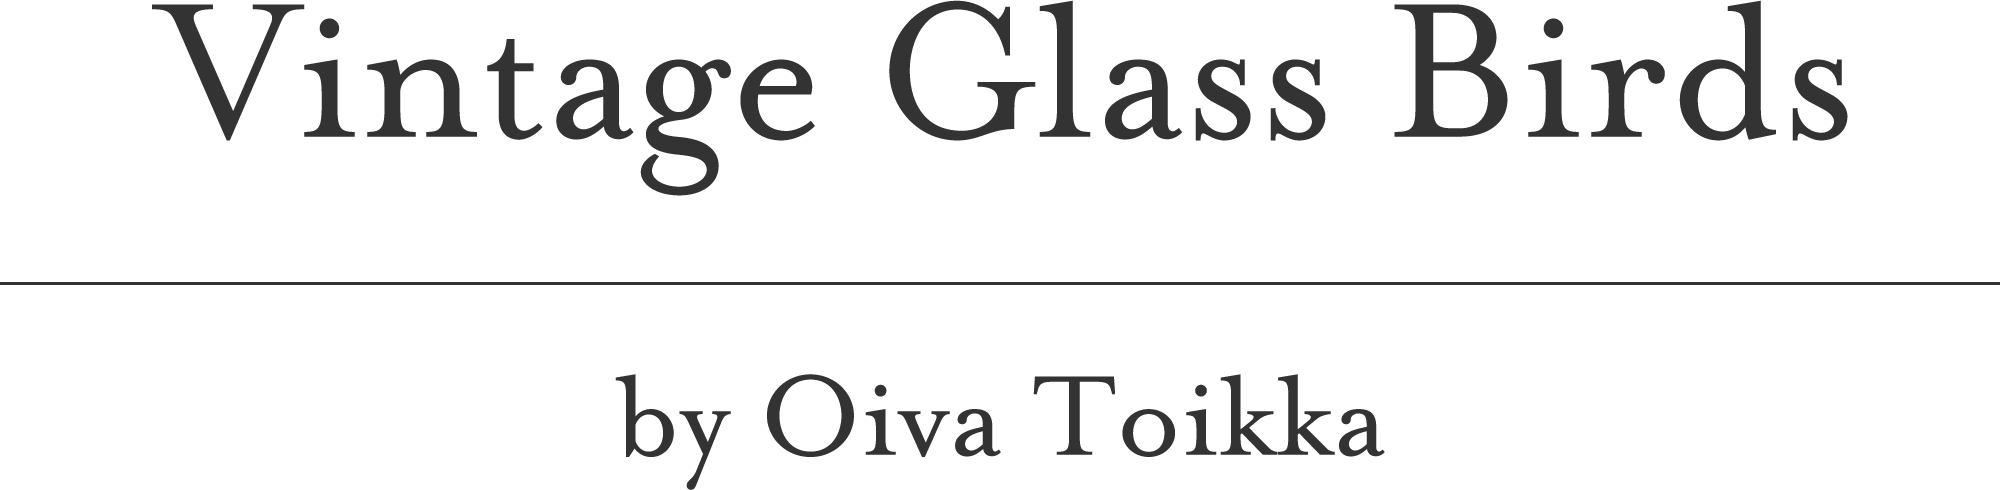 Vintage Glass Birds by Oiva Toikka